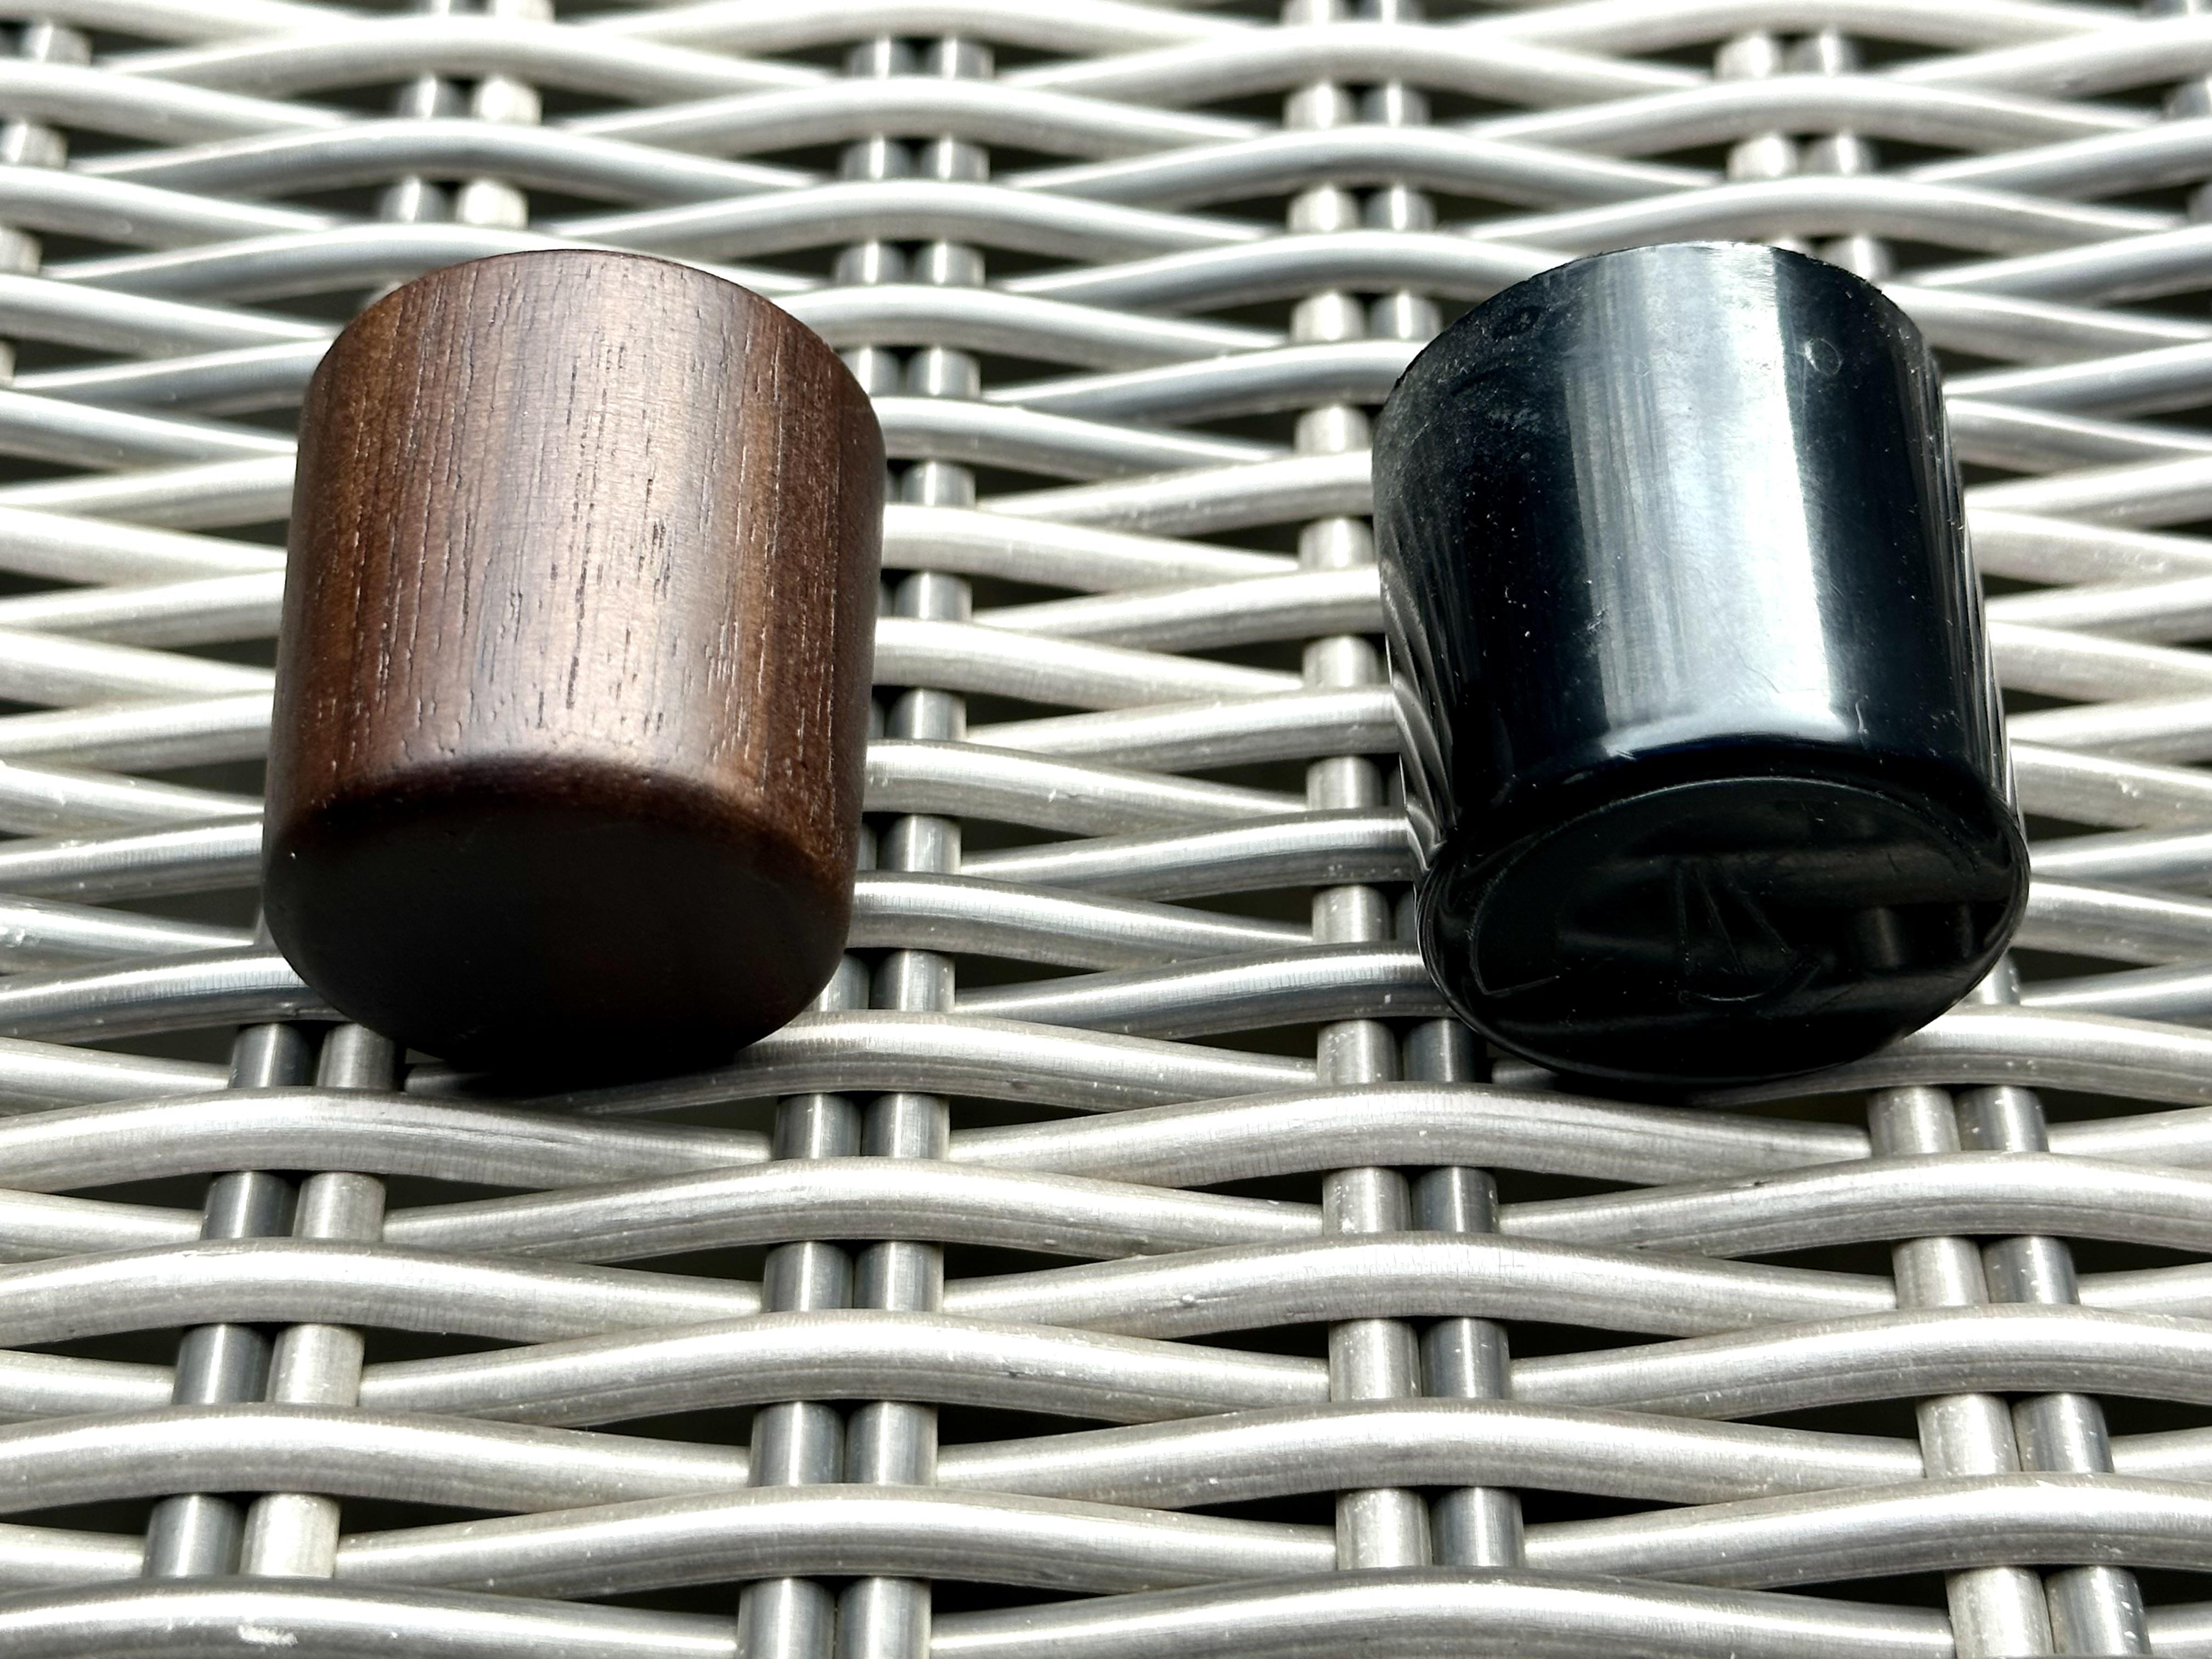 walnut knob vs plastic knob side